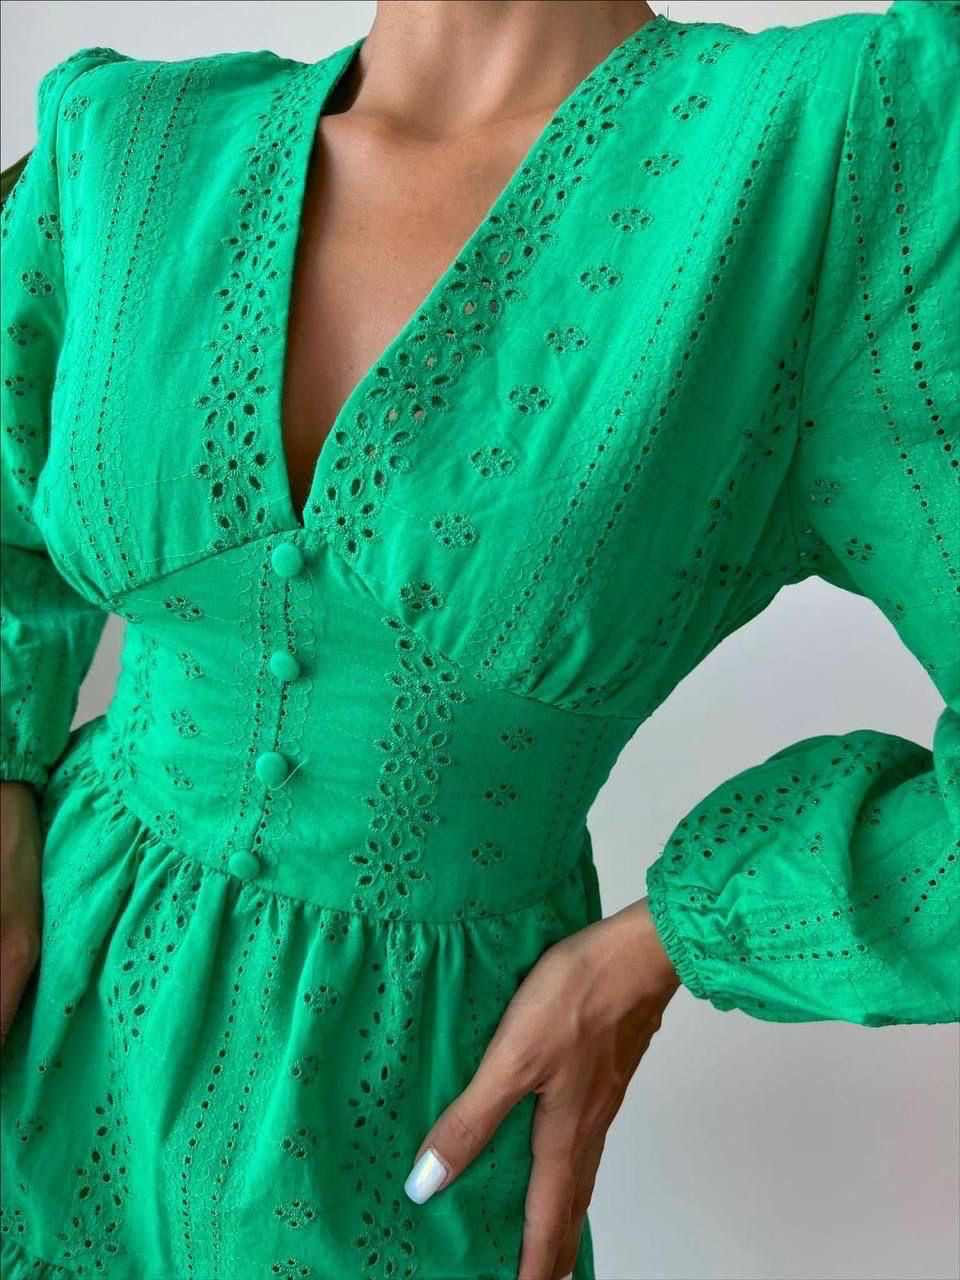 Дамска рокля CARITE GREEN  https://bvseductive.com/products/womans-s-dresses-carite-green  моделът е с V-образно деколте и красив акцент от буфан ръкави - комбинация, която ще провокира вниманието на околните дължината се разкроява и оптически ще ....